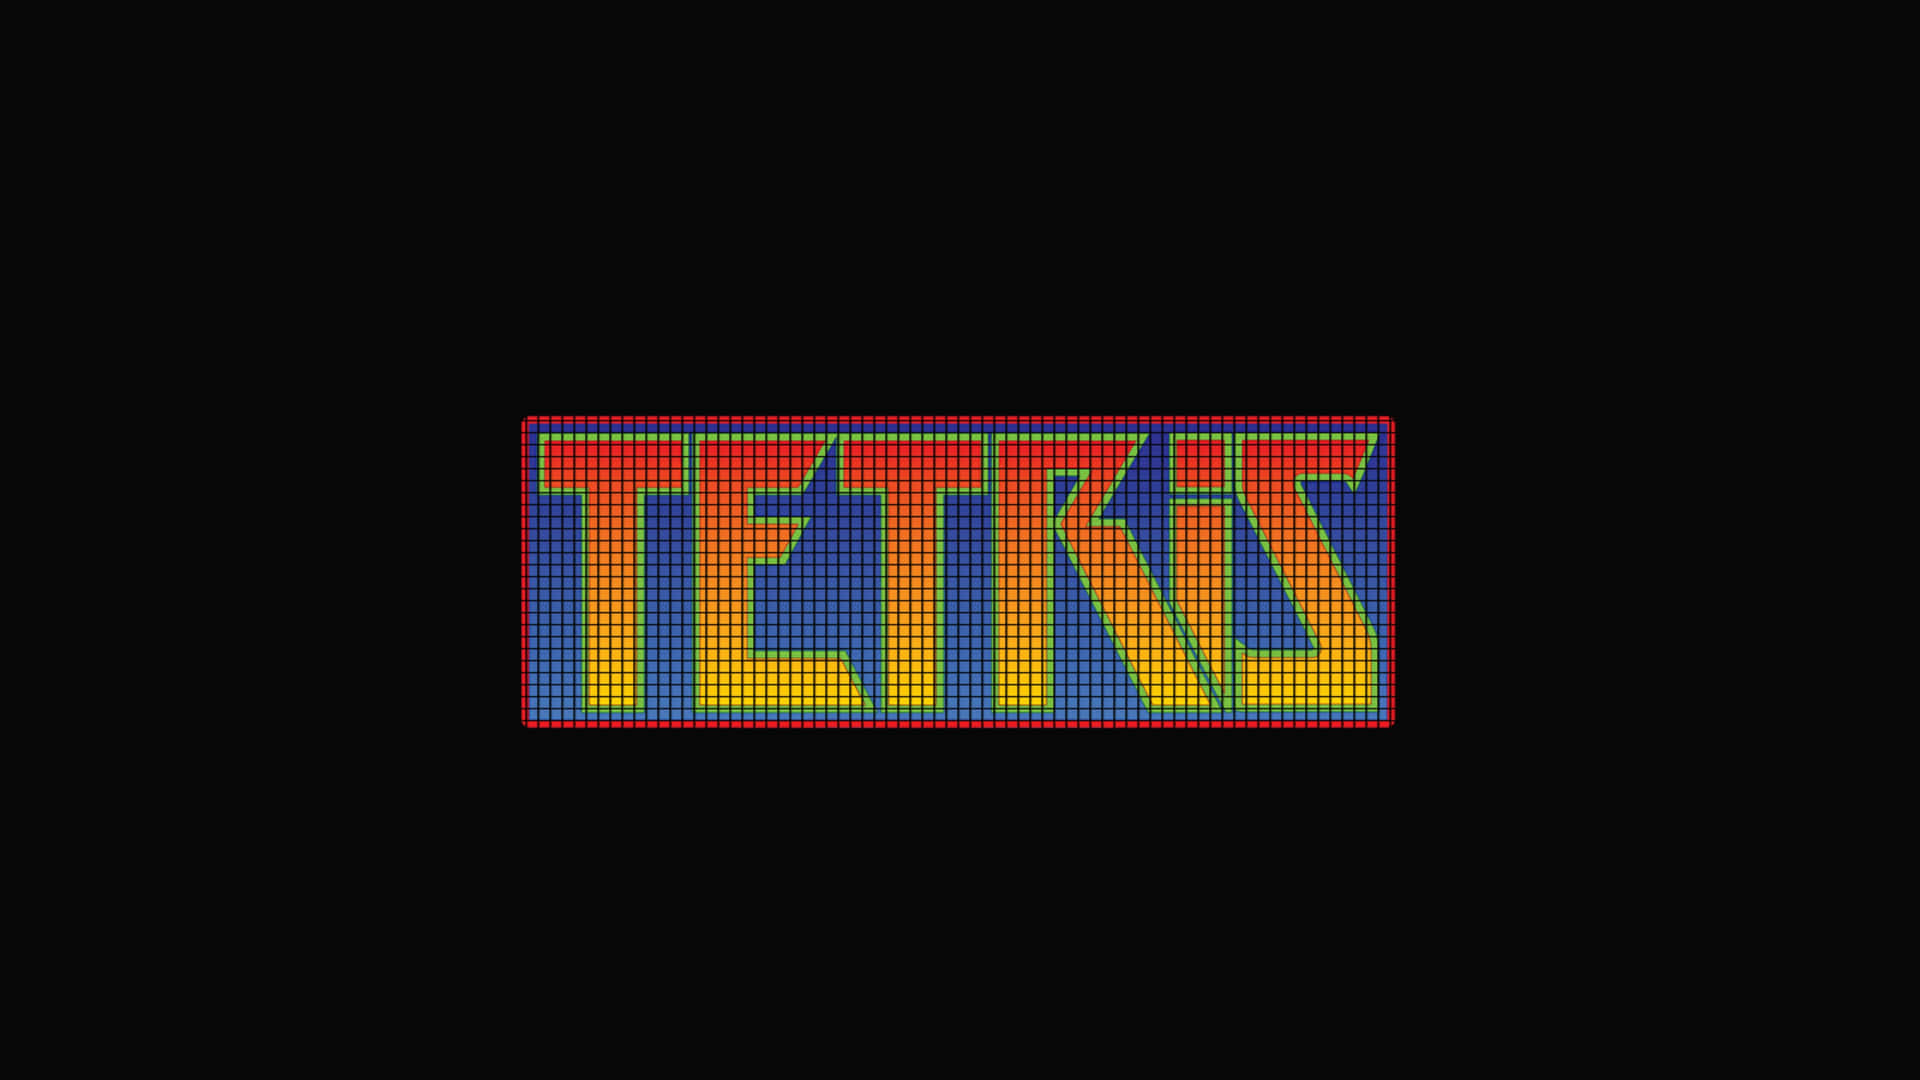 Tetrishintergrund Mit 3840 X 2160 Pixel